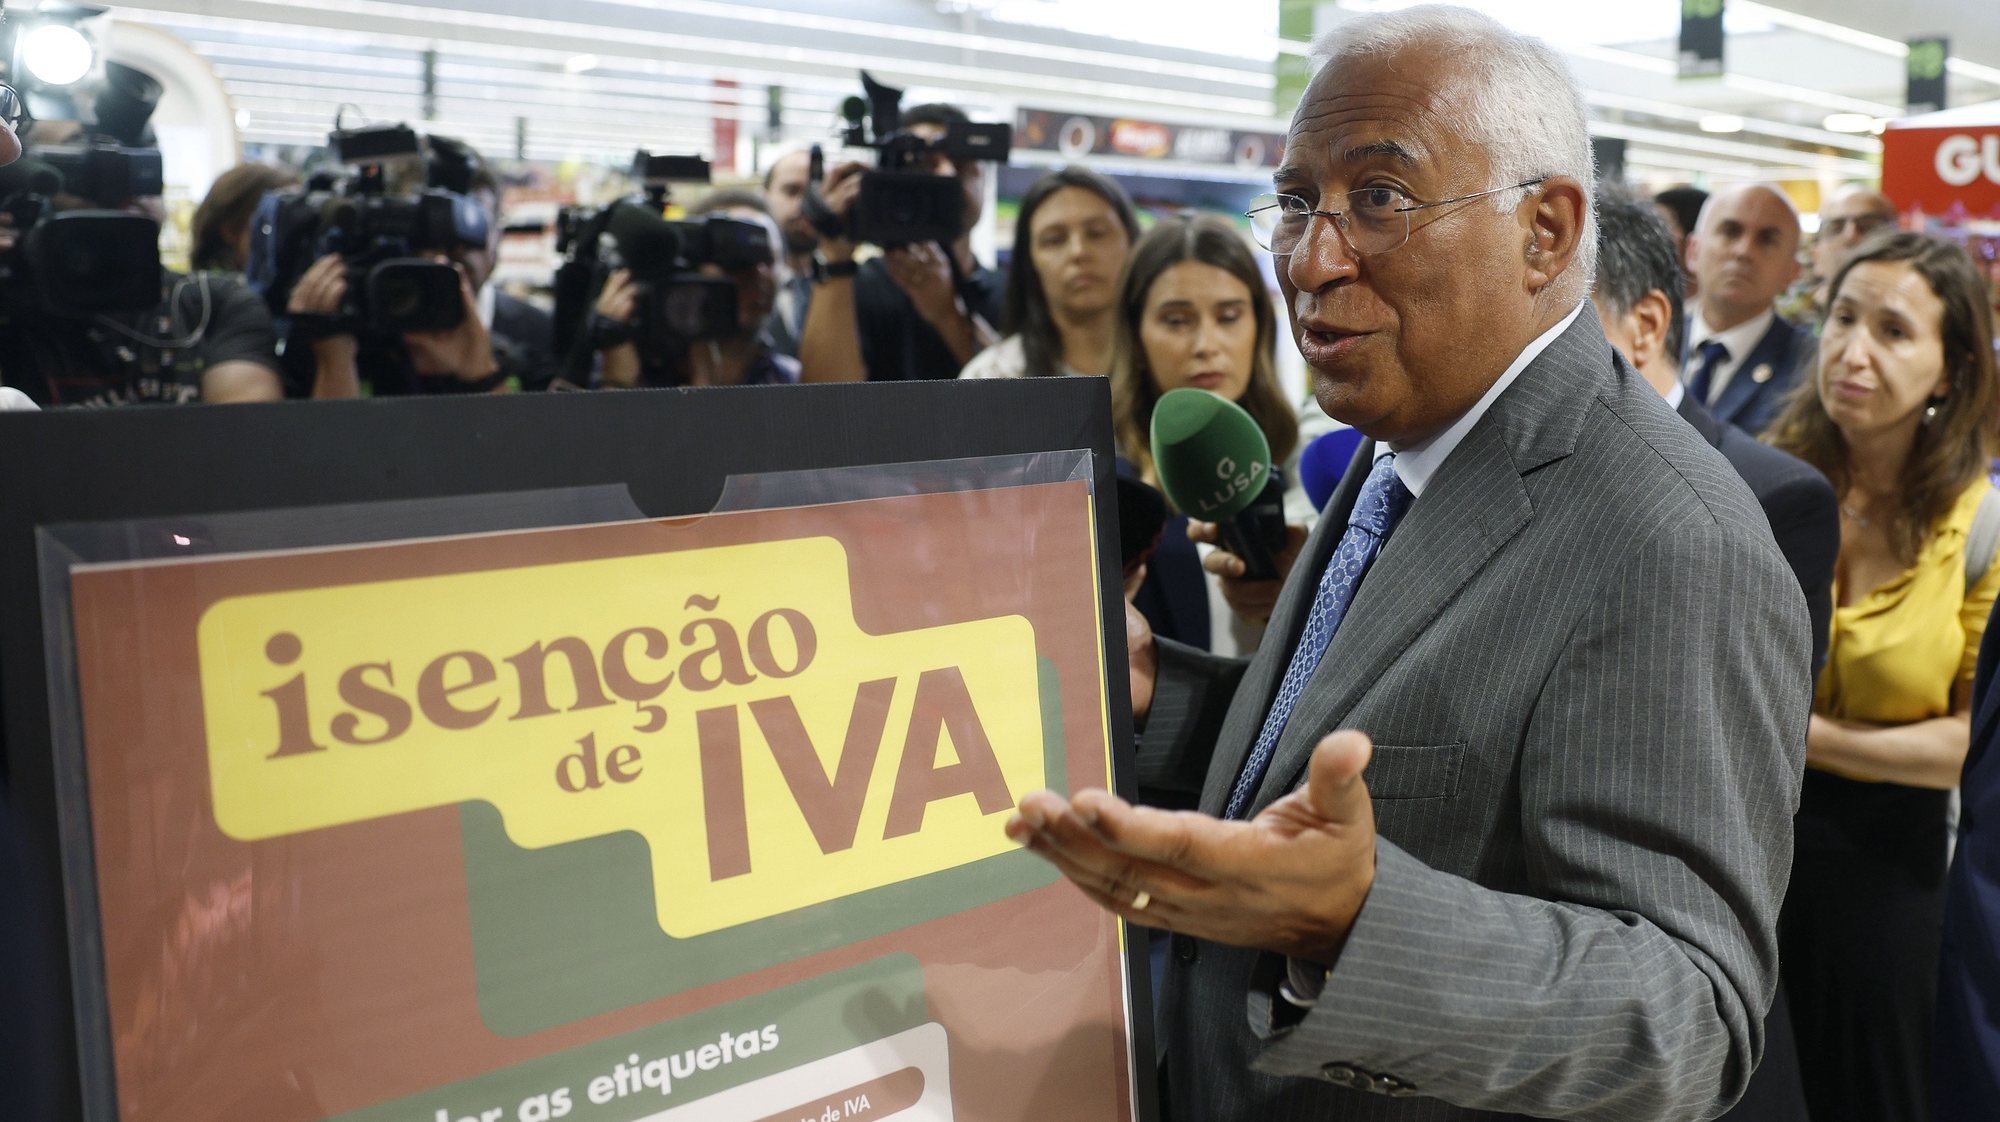 O primeiro-ministro, António Costa, durante uma visita a um hipermercado, no dia em que entra em vigor a lei que procede à aplicação transitória de isenção de IVA a certos produtos alimentares, em Lisboa, 18 de abril de 2023. ANTÓNIO PEDRO SANTOS/LUSA